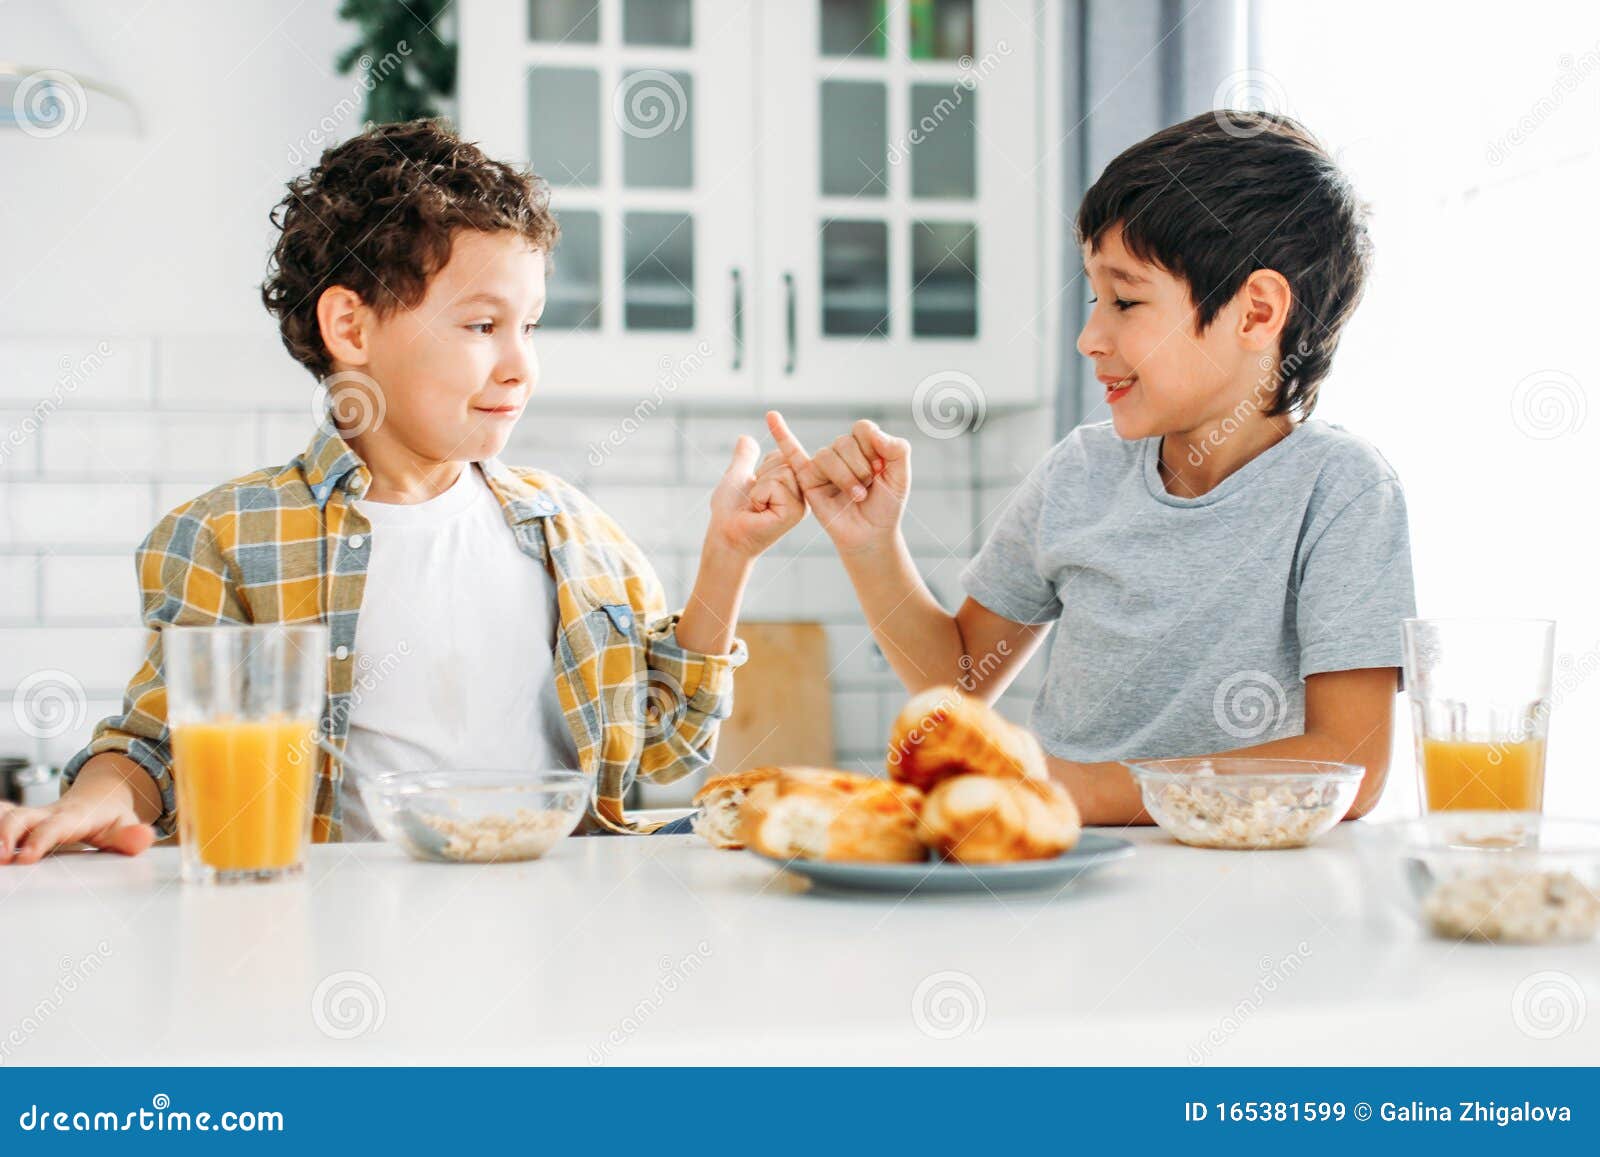 Two Siblings Tween Boys Real Brothers Having Breakfast On Bright